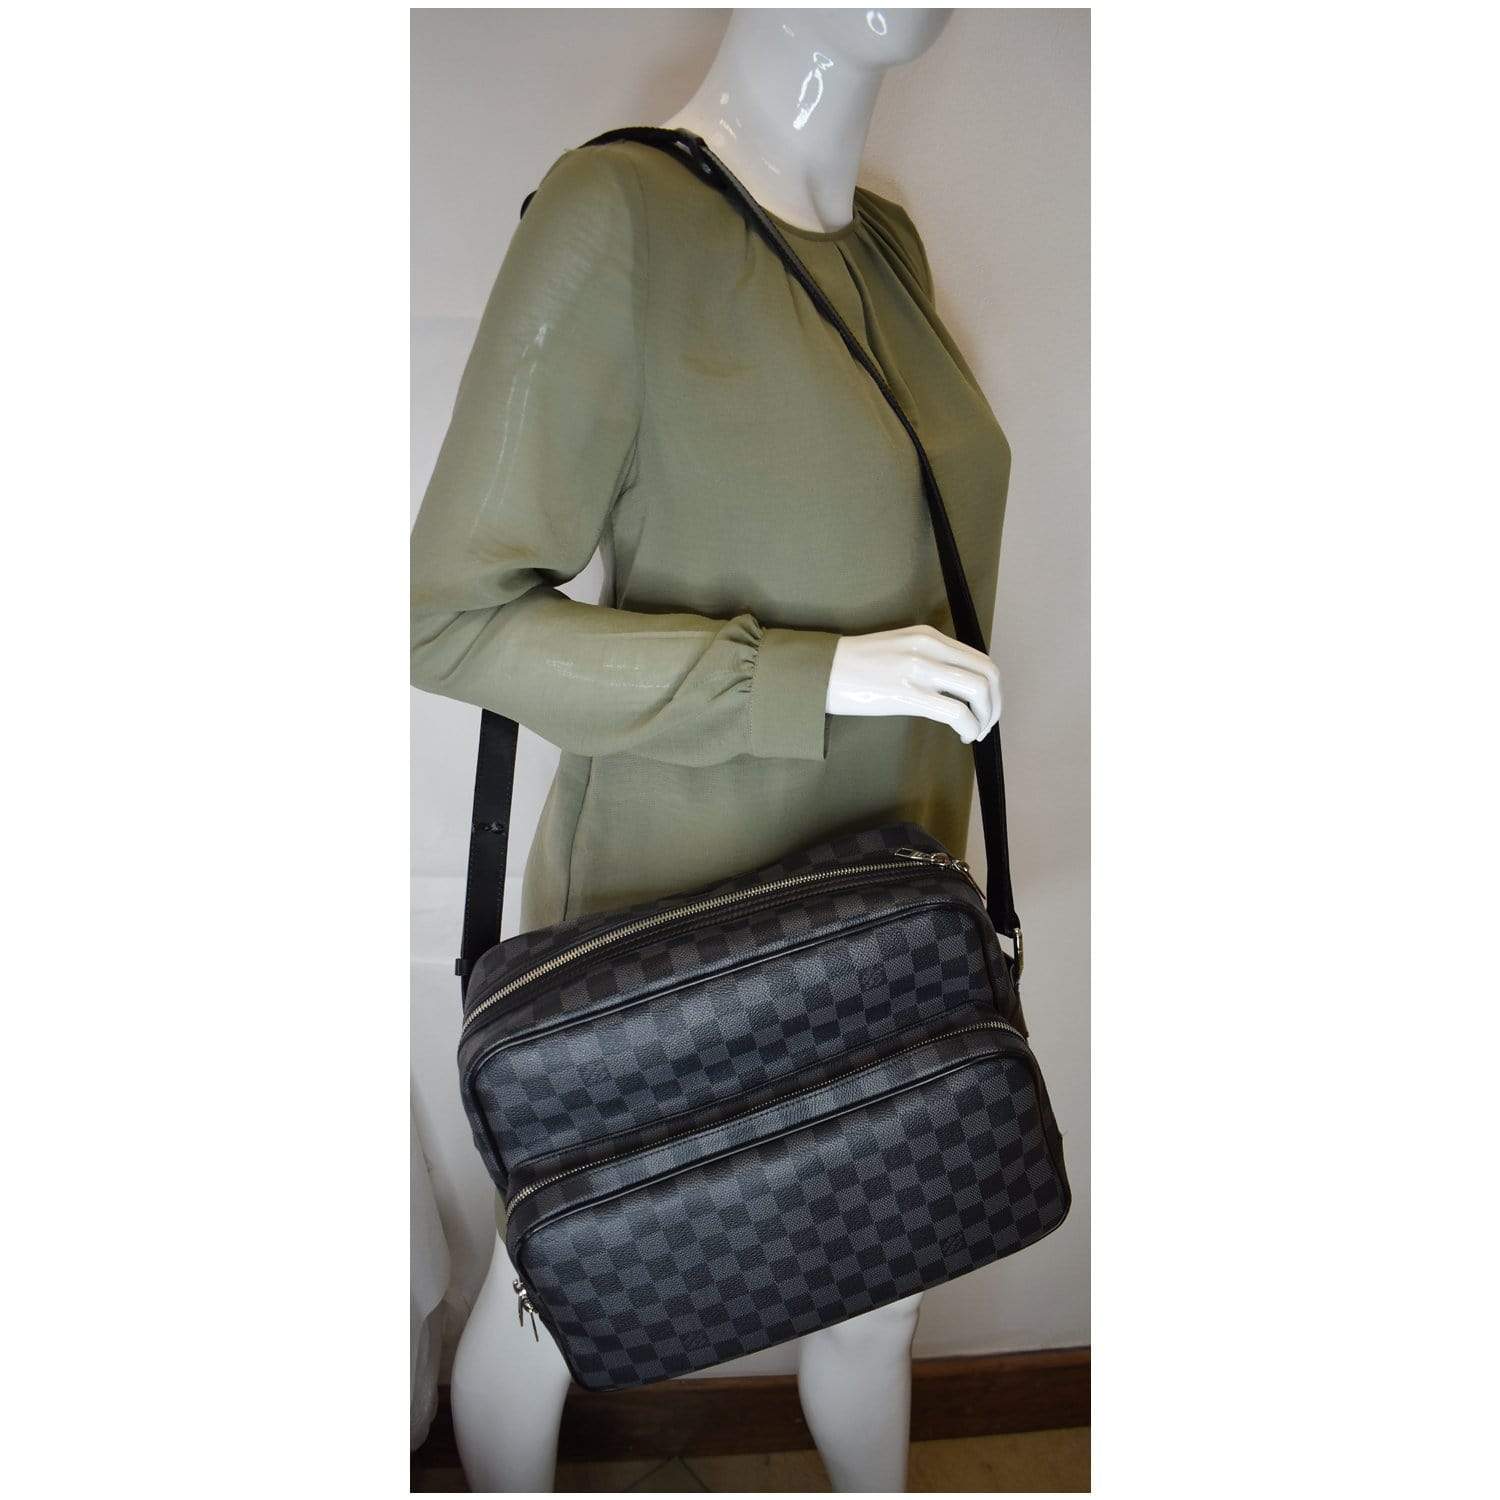 Shop Louis Vuitton DAMIER GRAPHITE Men's Messenger & Shoulder Bags